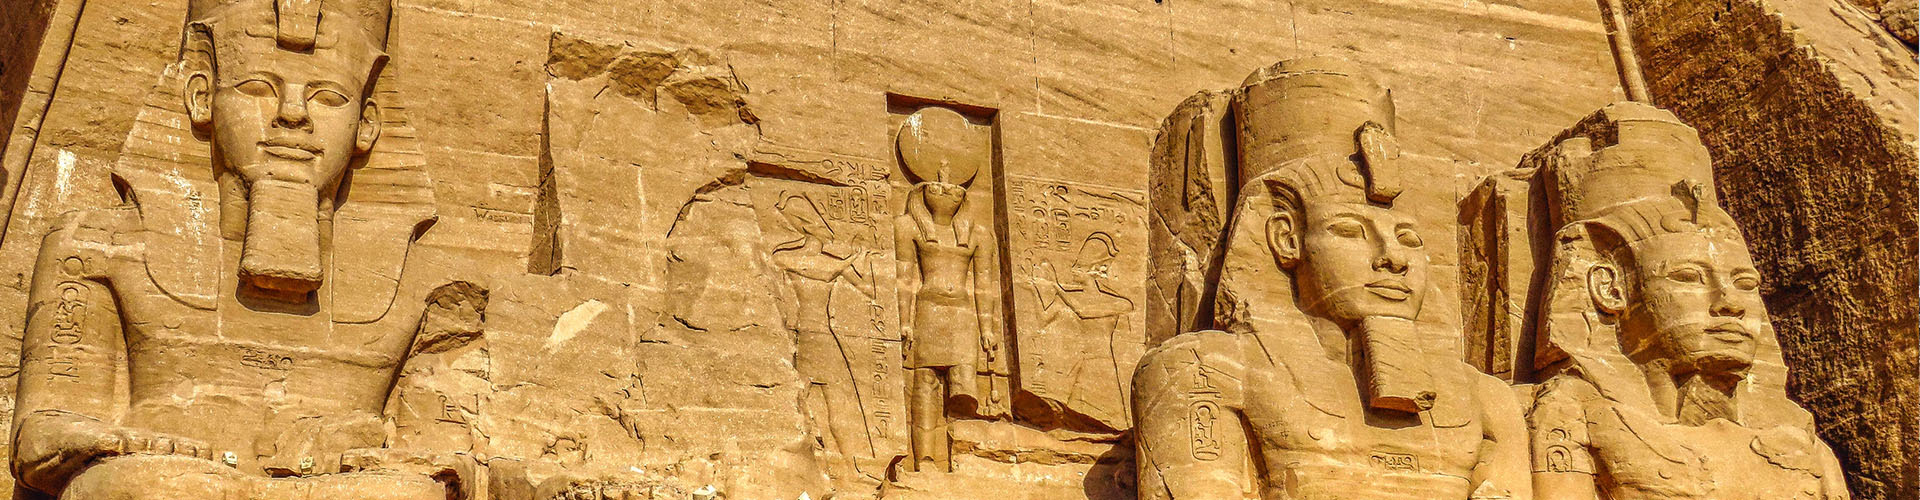 Pacote Maravilhas do Egito